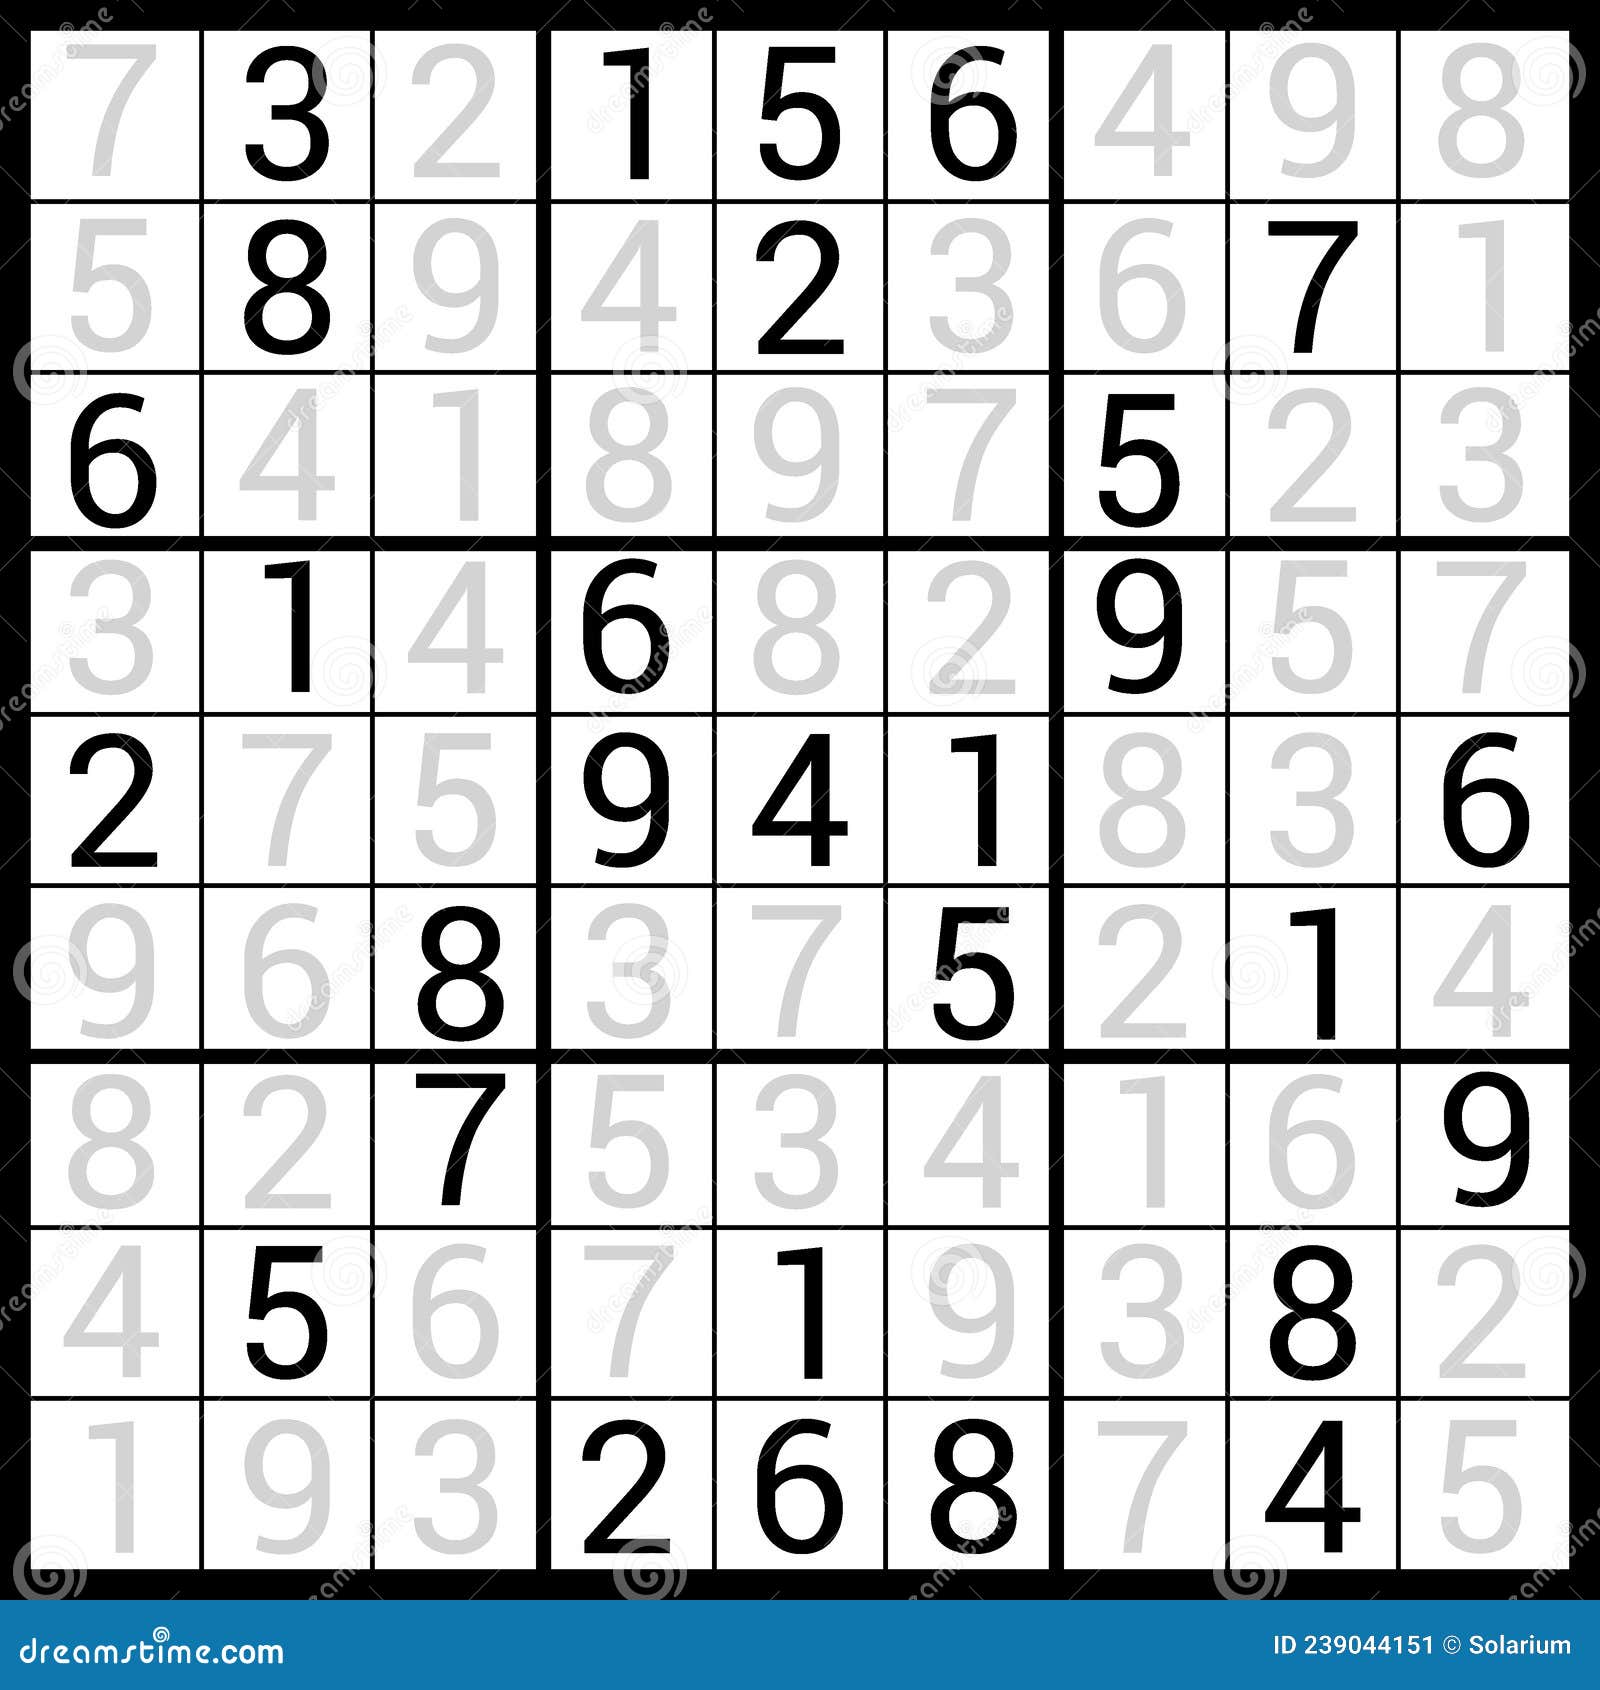 Sudoku com a resposta jogo de quebra-cabeça do vetor